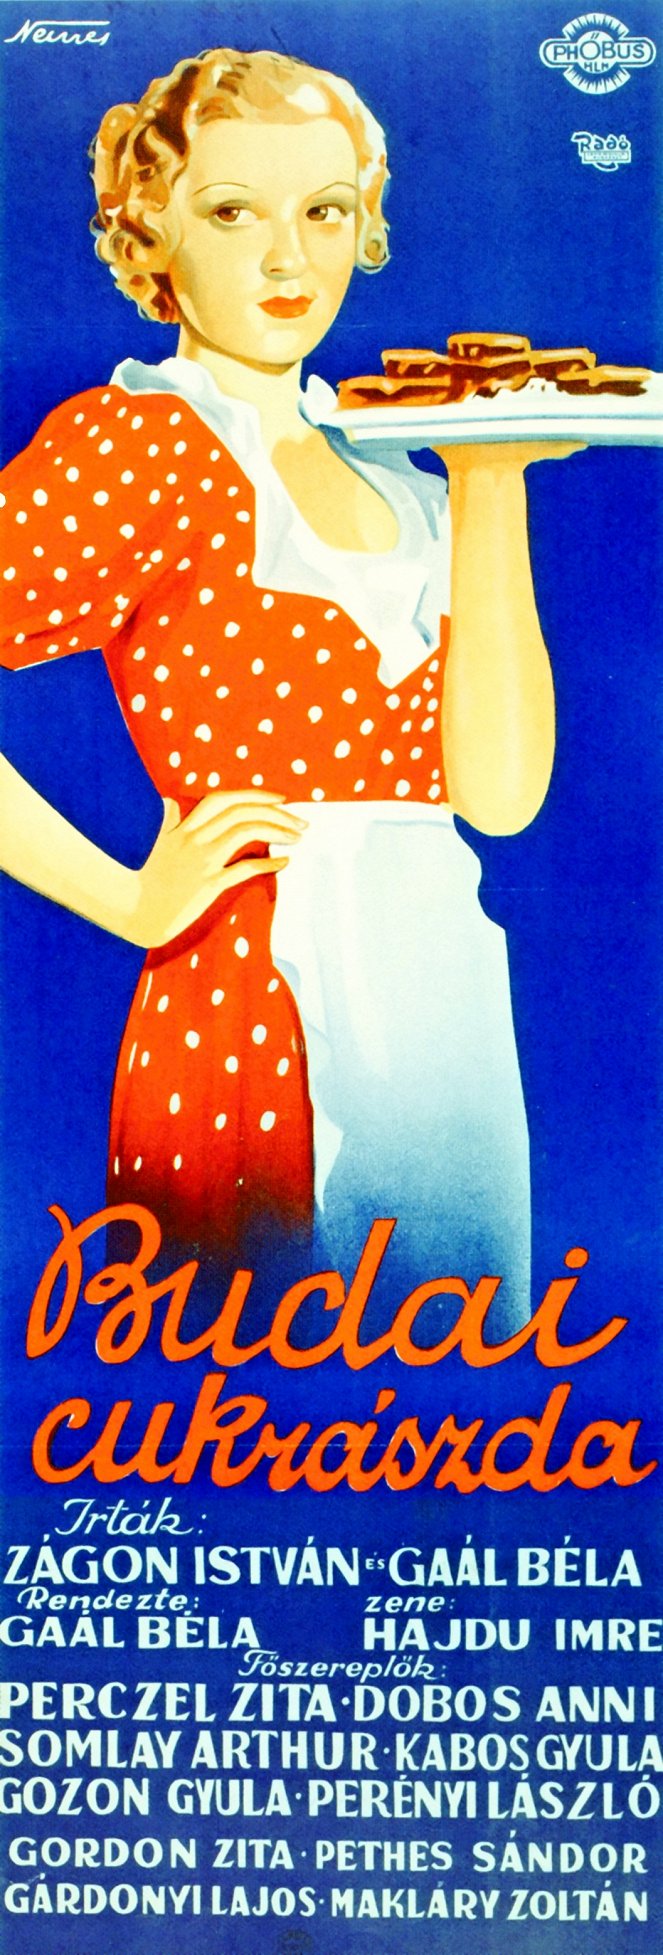 Budai cukrászda - Plakátok